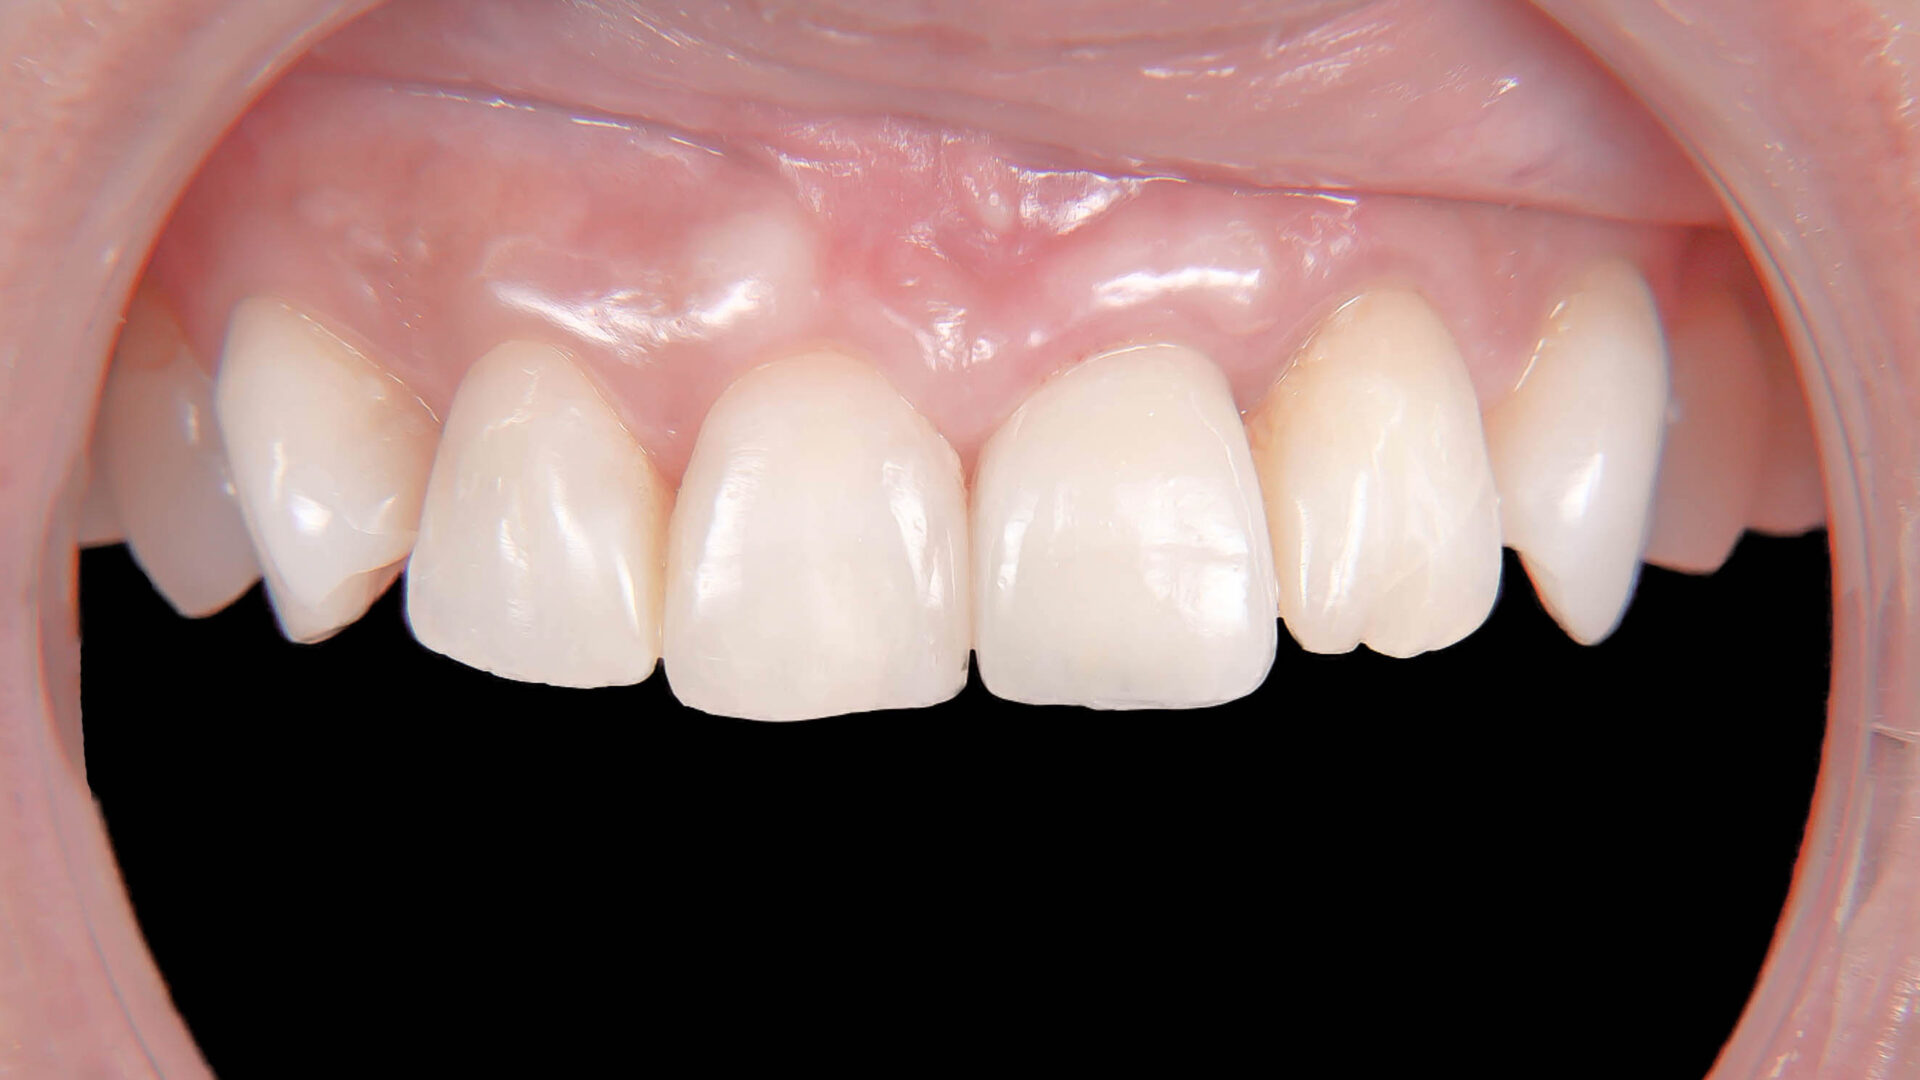 歯根破折により抜歯となった歯を機能的、審美的に回復させたケース